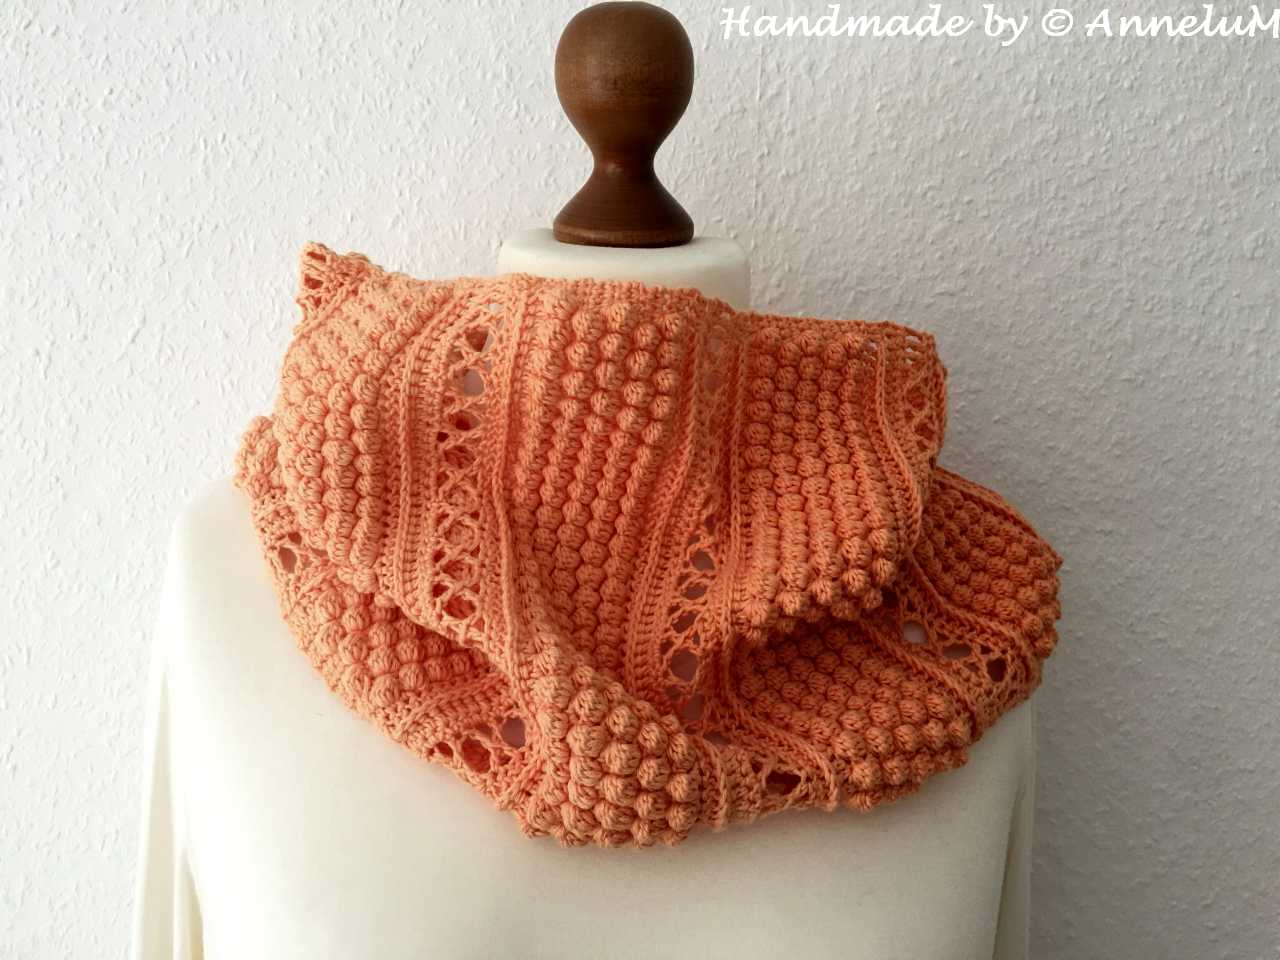 Kuplatie-Schal Handmade by AnneluM